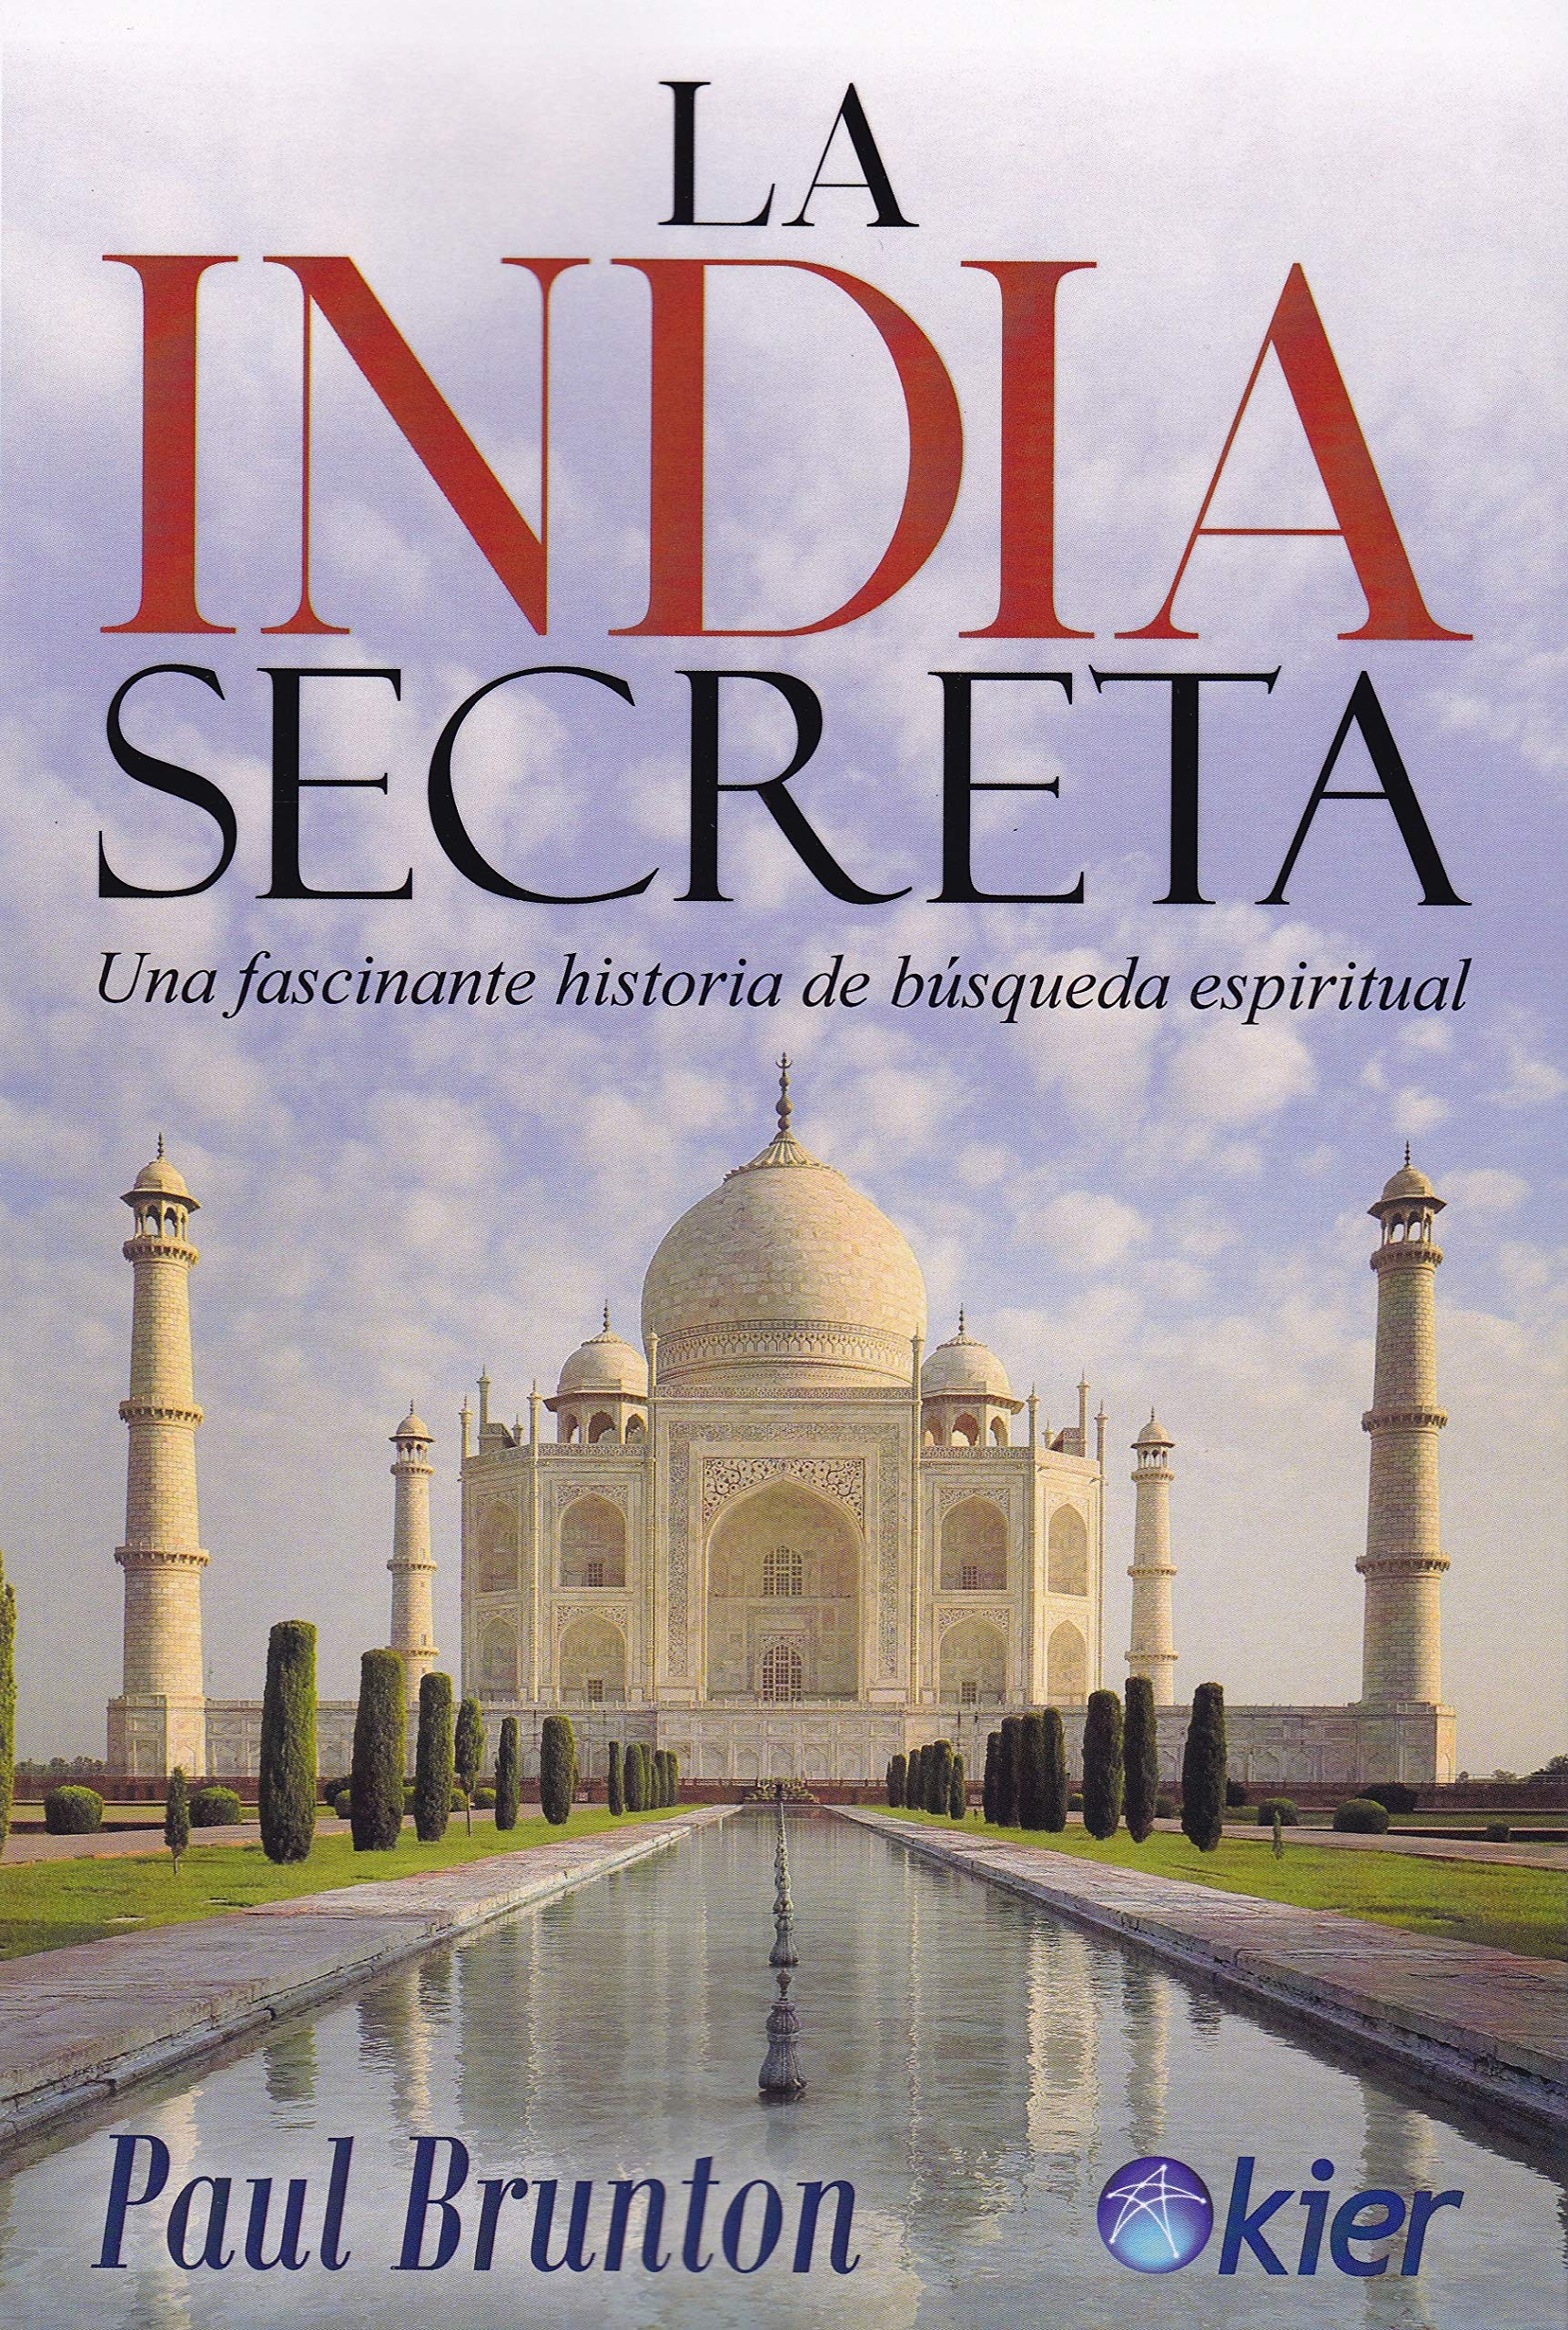 La India Secreta